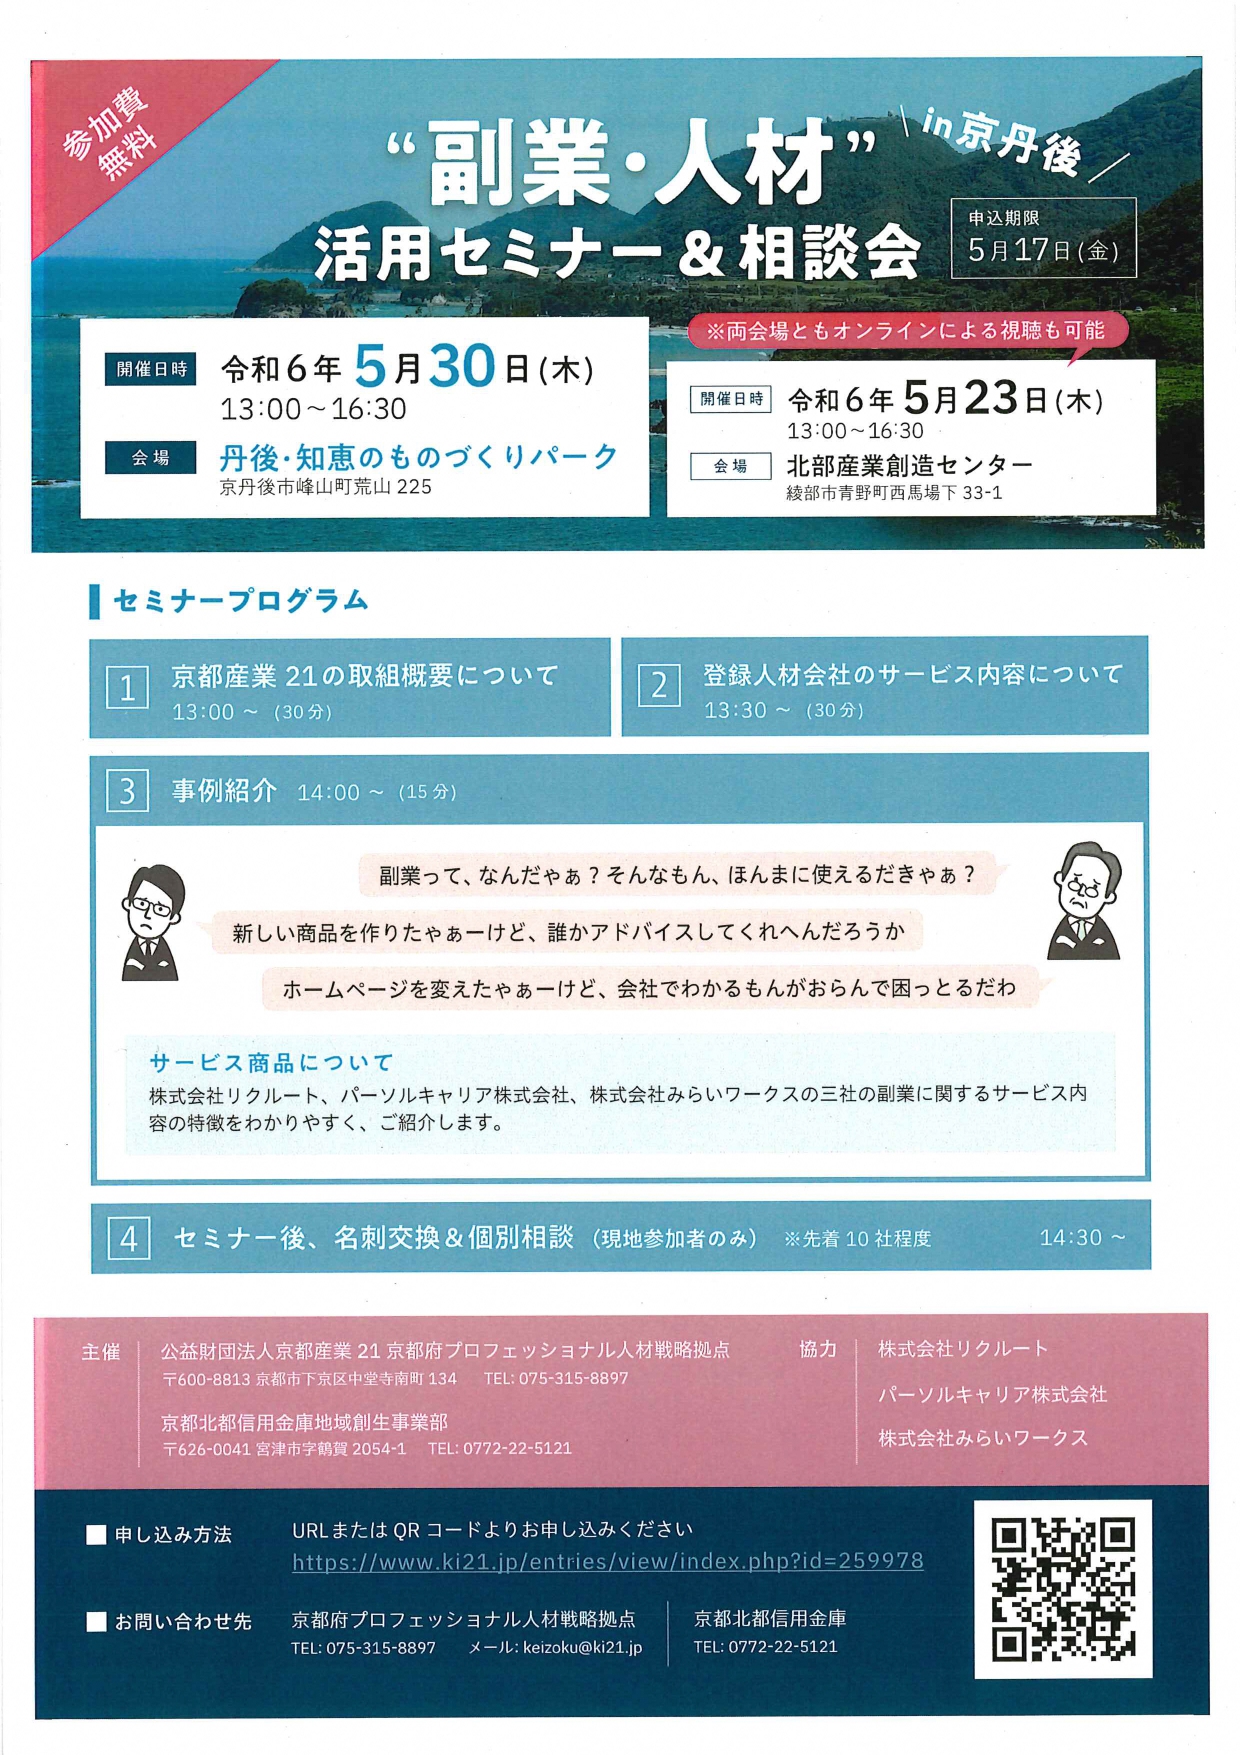 “副業・人材”活用セミナー＆相談会 参加者募集!!(5/17迄)